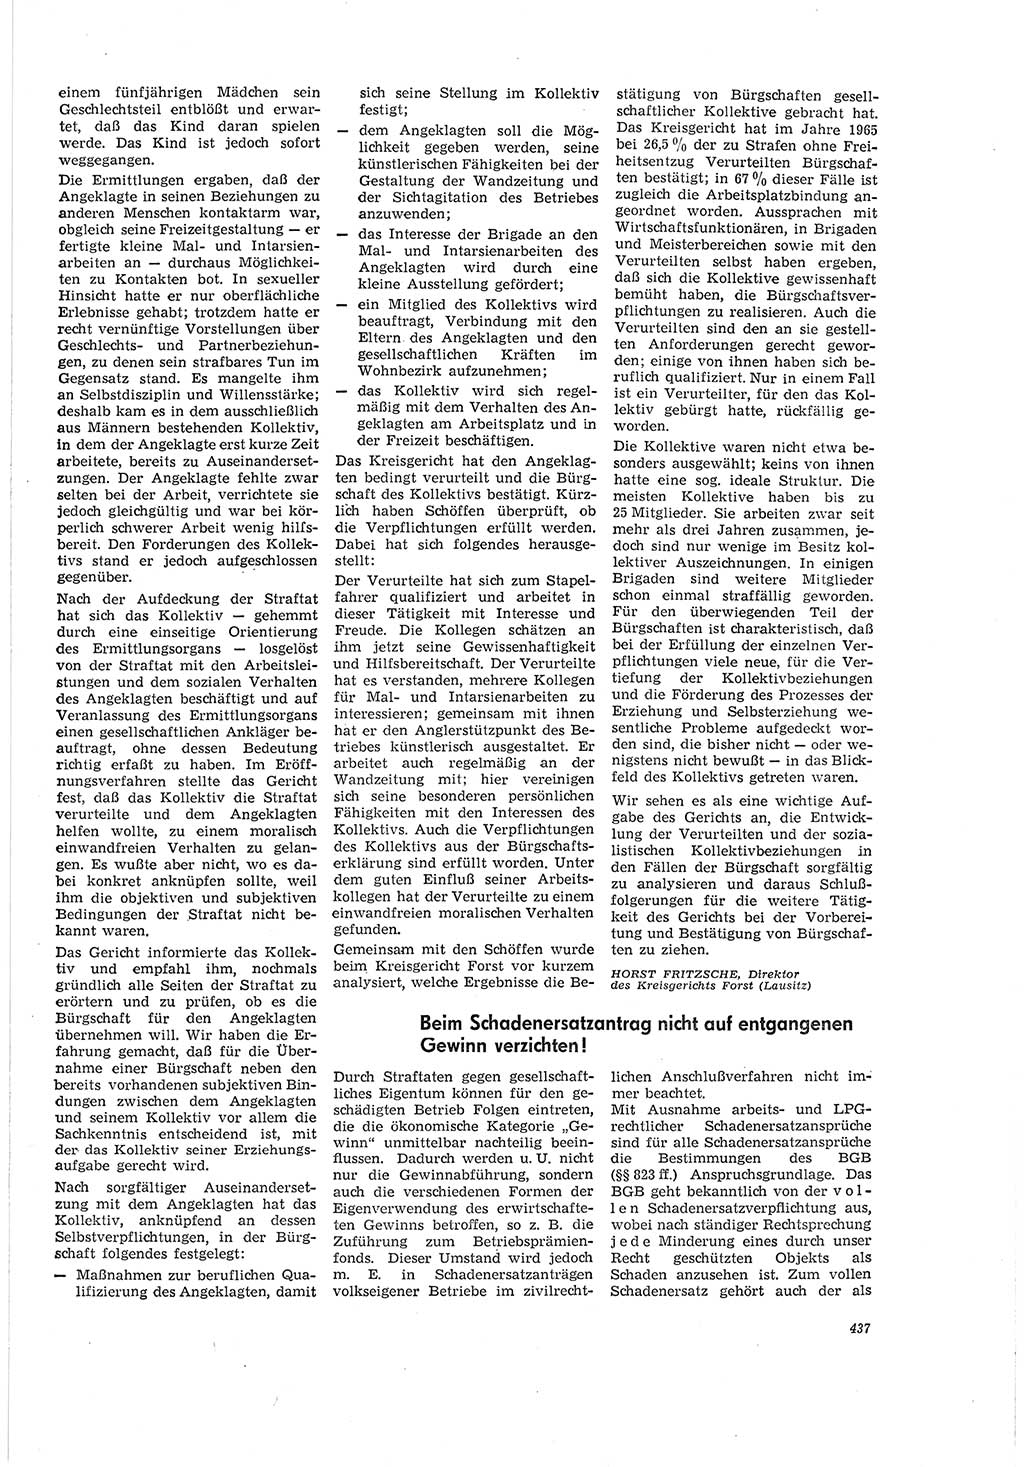 Neue Justiz (NJ), Zeitschrift für Recht und Rechtswissenschaft [Deutsche Demokratische Republik (DDR)], 20. Jahrgang 1966, Seite 437 (NJ DDR 1966, S. 437)